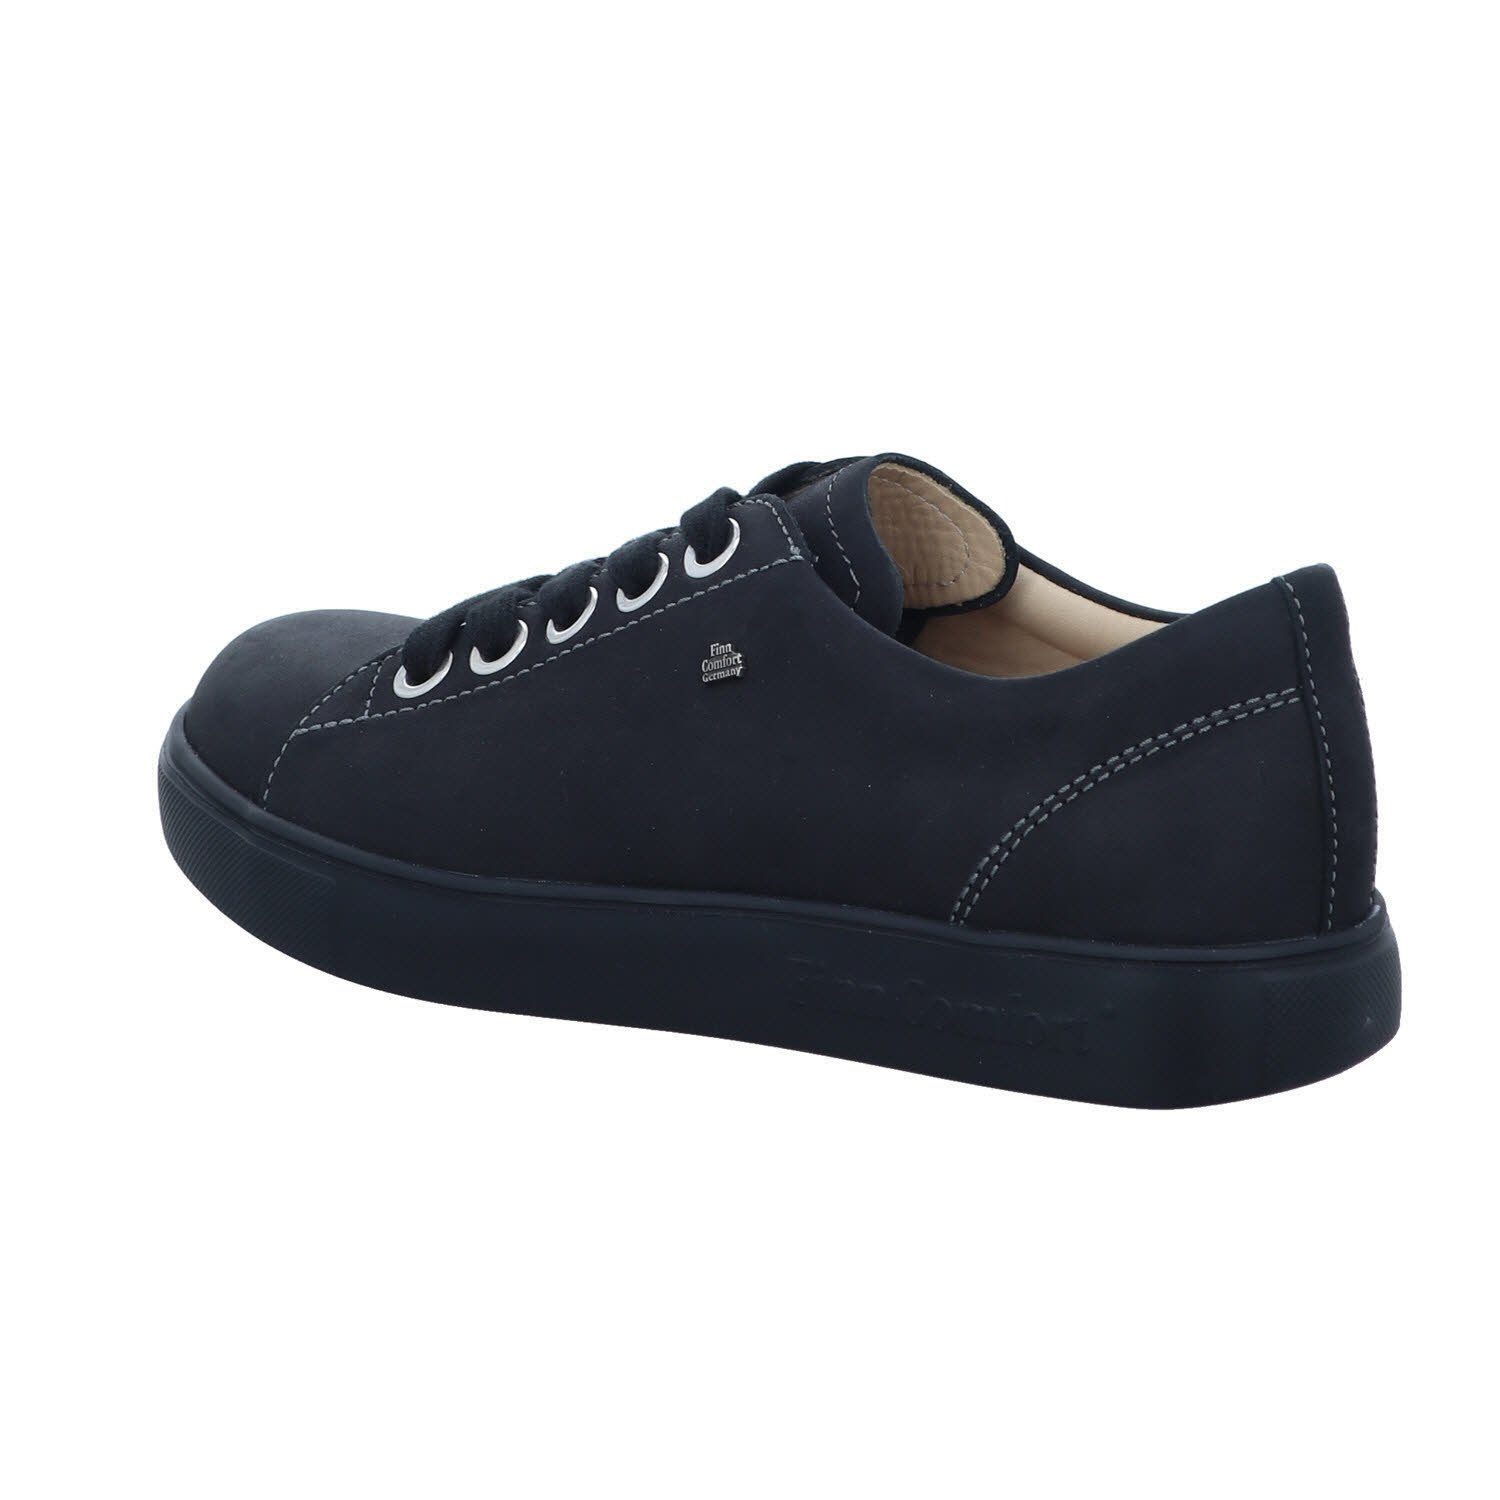 Finn black Sneaker Comfort